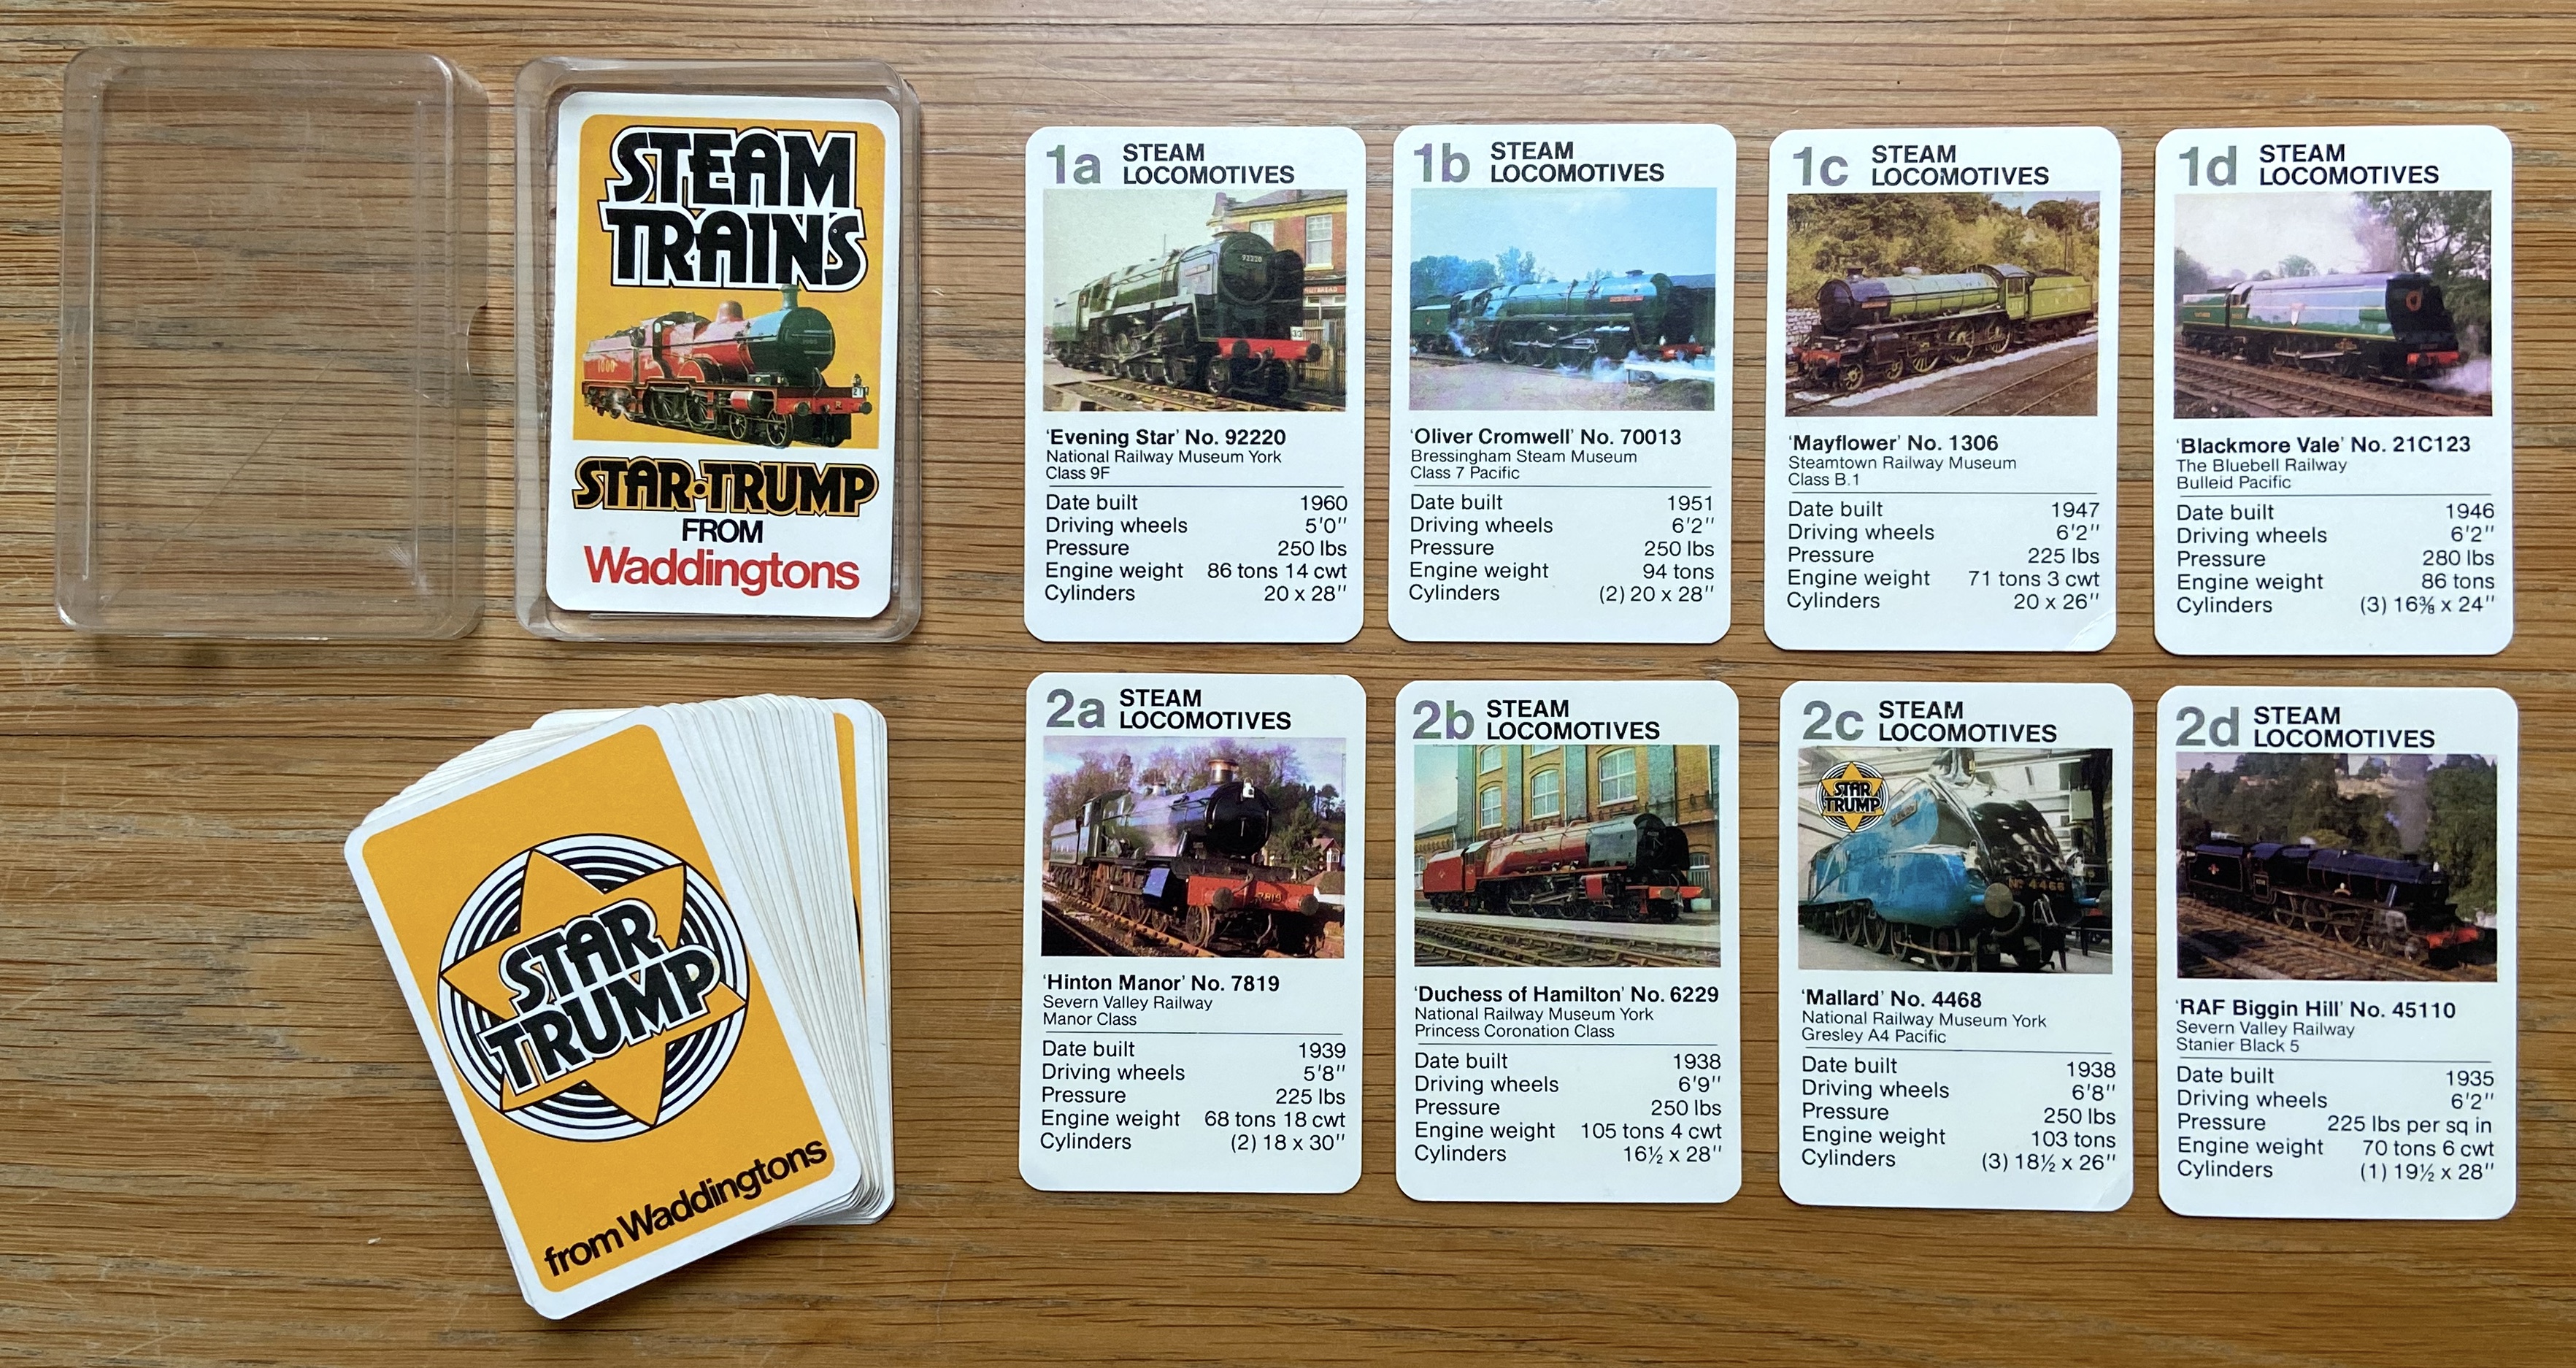 Steam Trains: Star-Trump